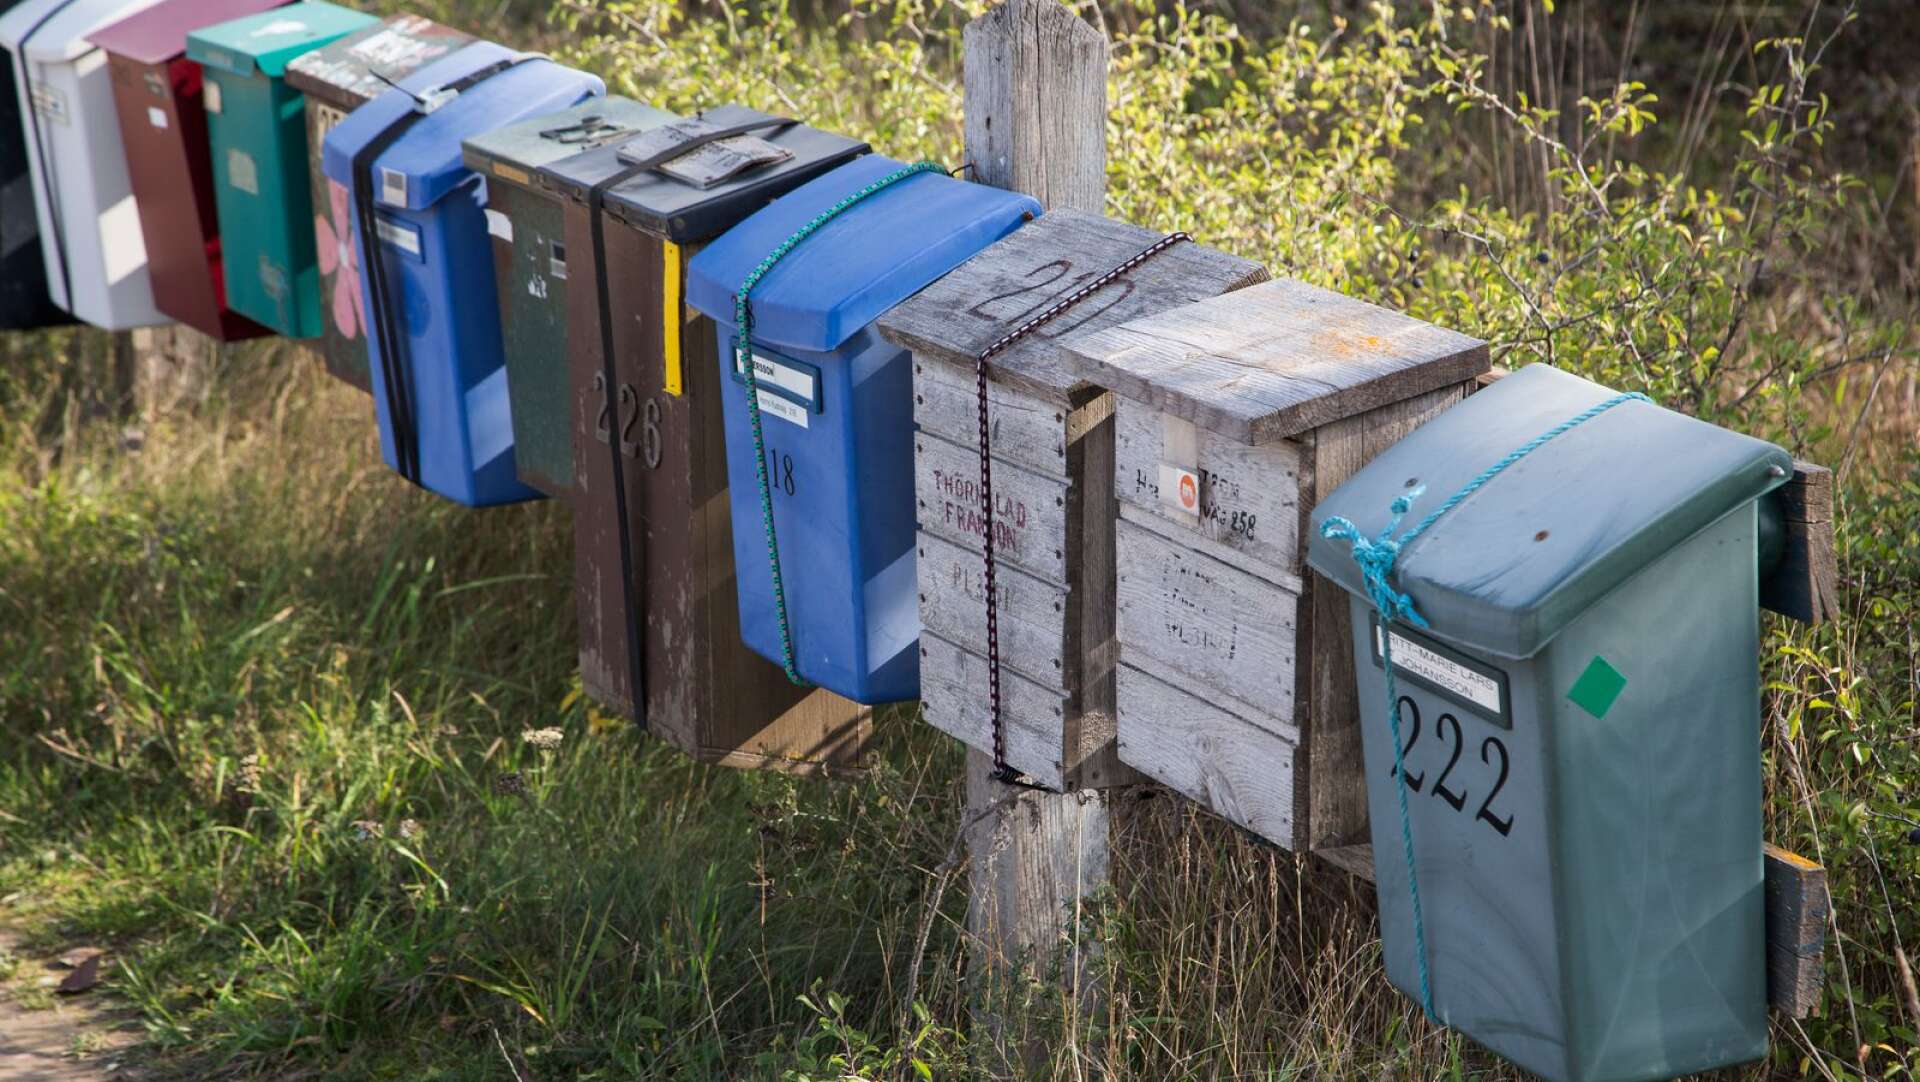 Varannandagsutdelning av post på landsbygden kritiseras av Företagarna i inlägget.